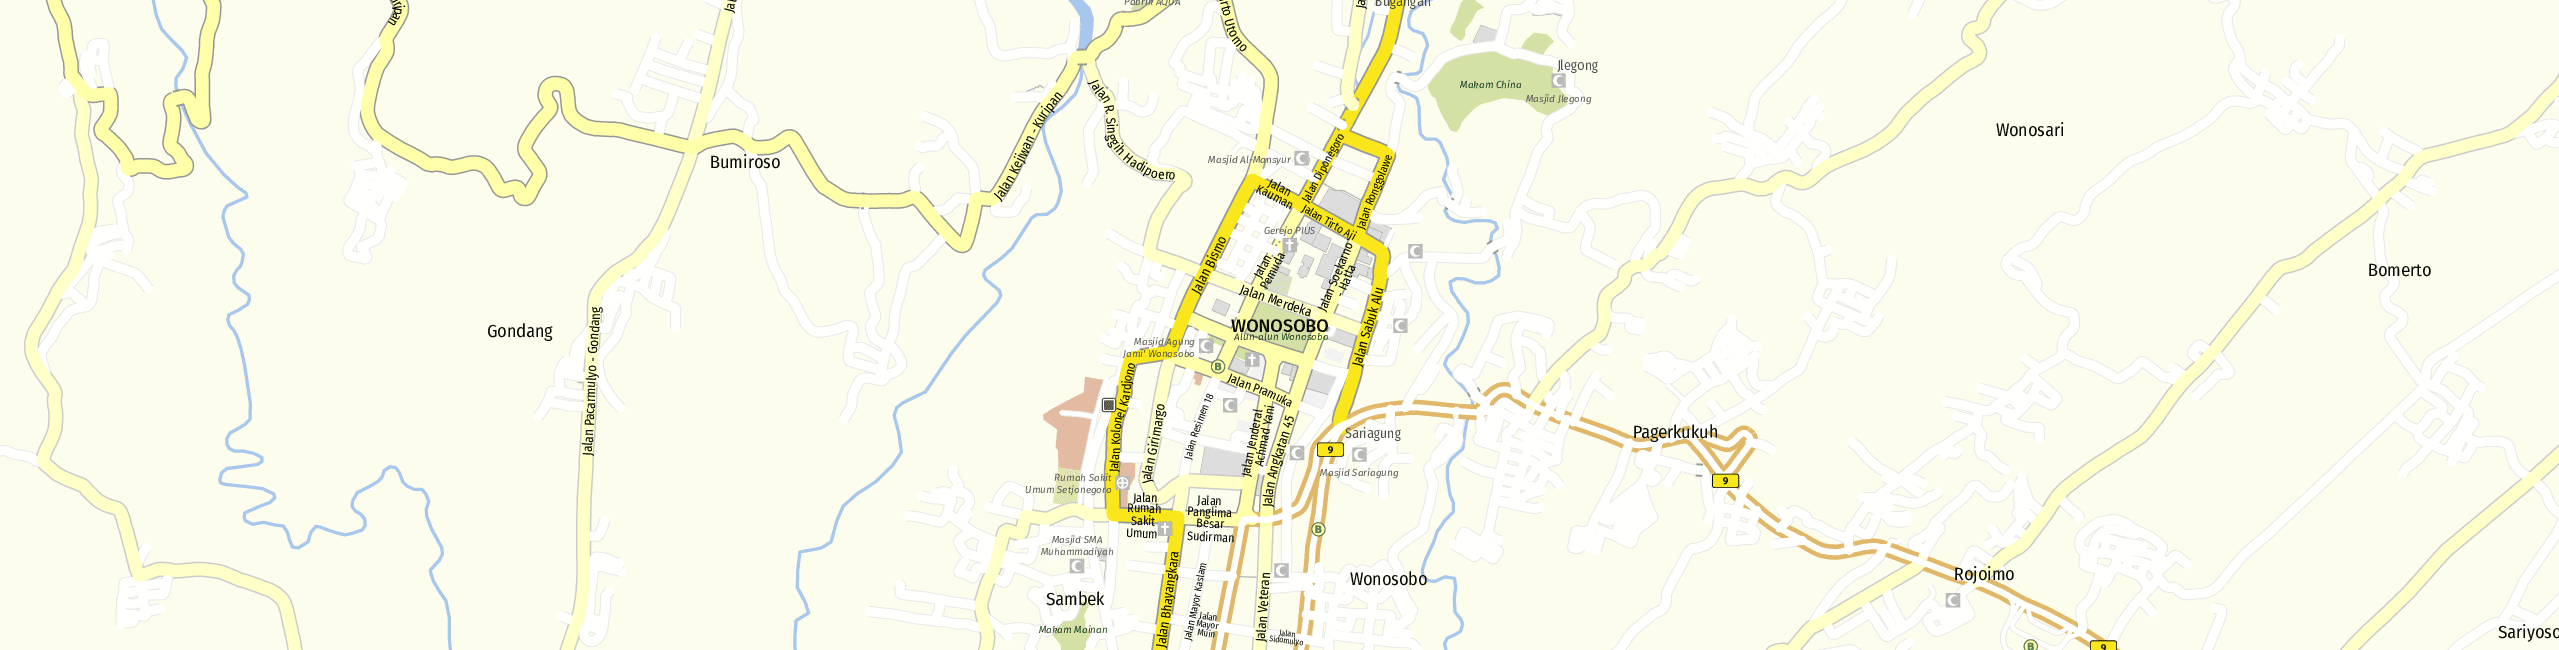 Stadtplan Wonosobo zum Downloaden.